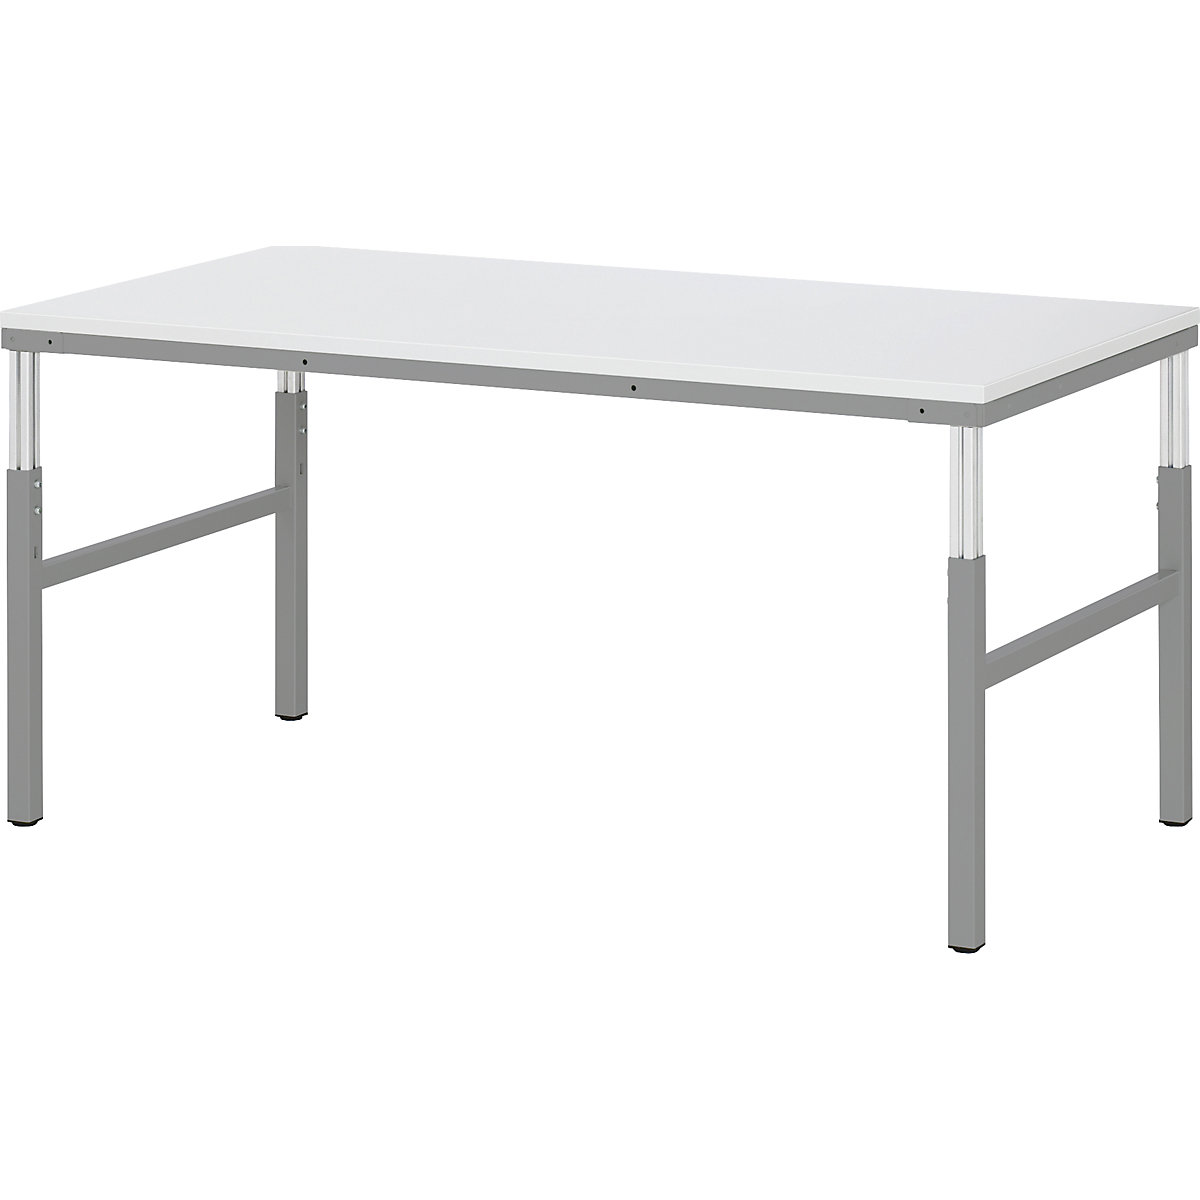 Pracovní stůl ESD – RAU, rozsah přestavování výšky 650 – 1000 mm, š x h 1200 x 900 mm